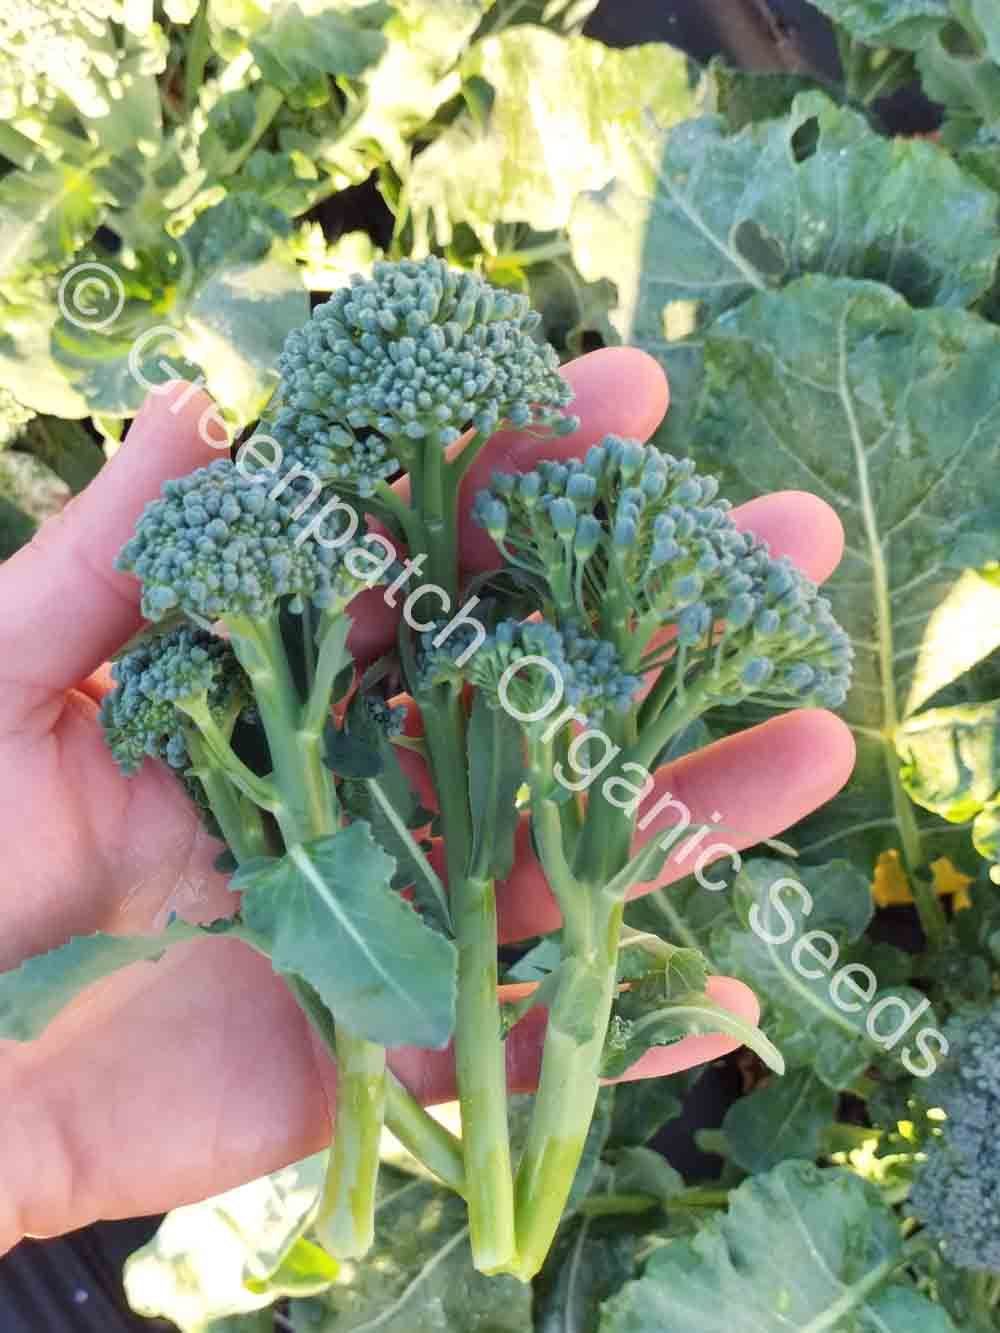 Broccoli - Umpqua